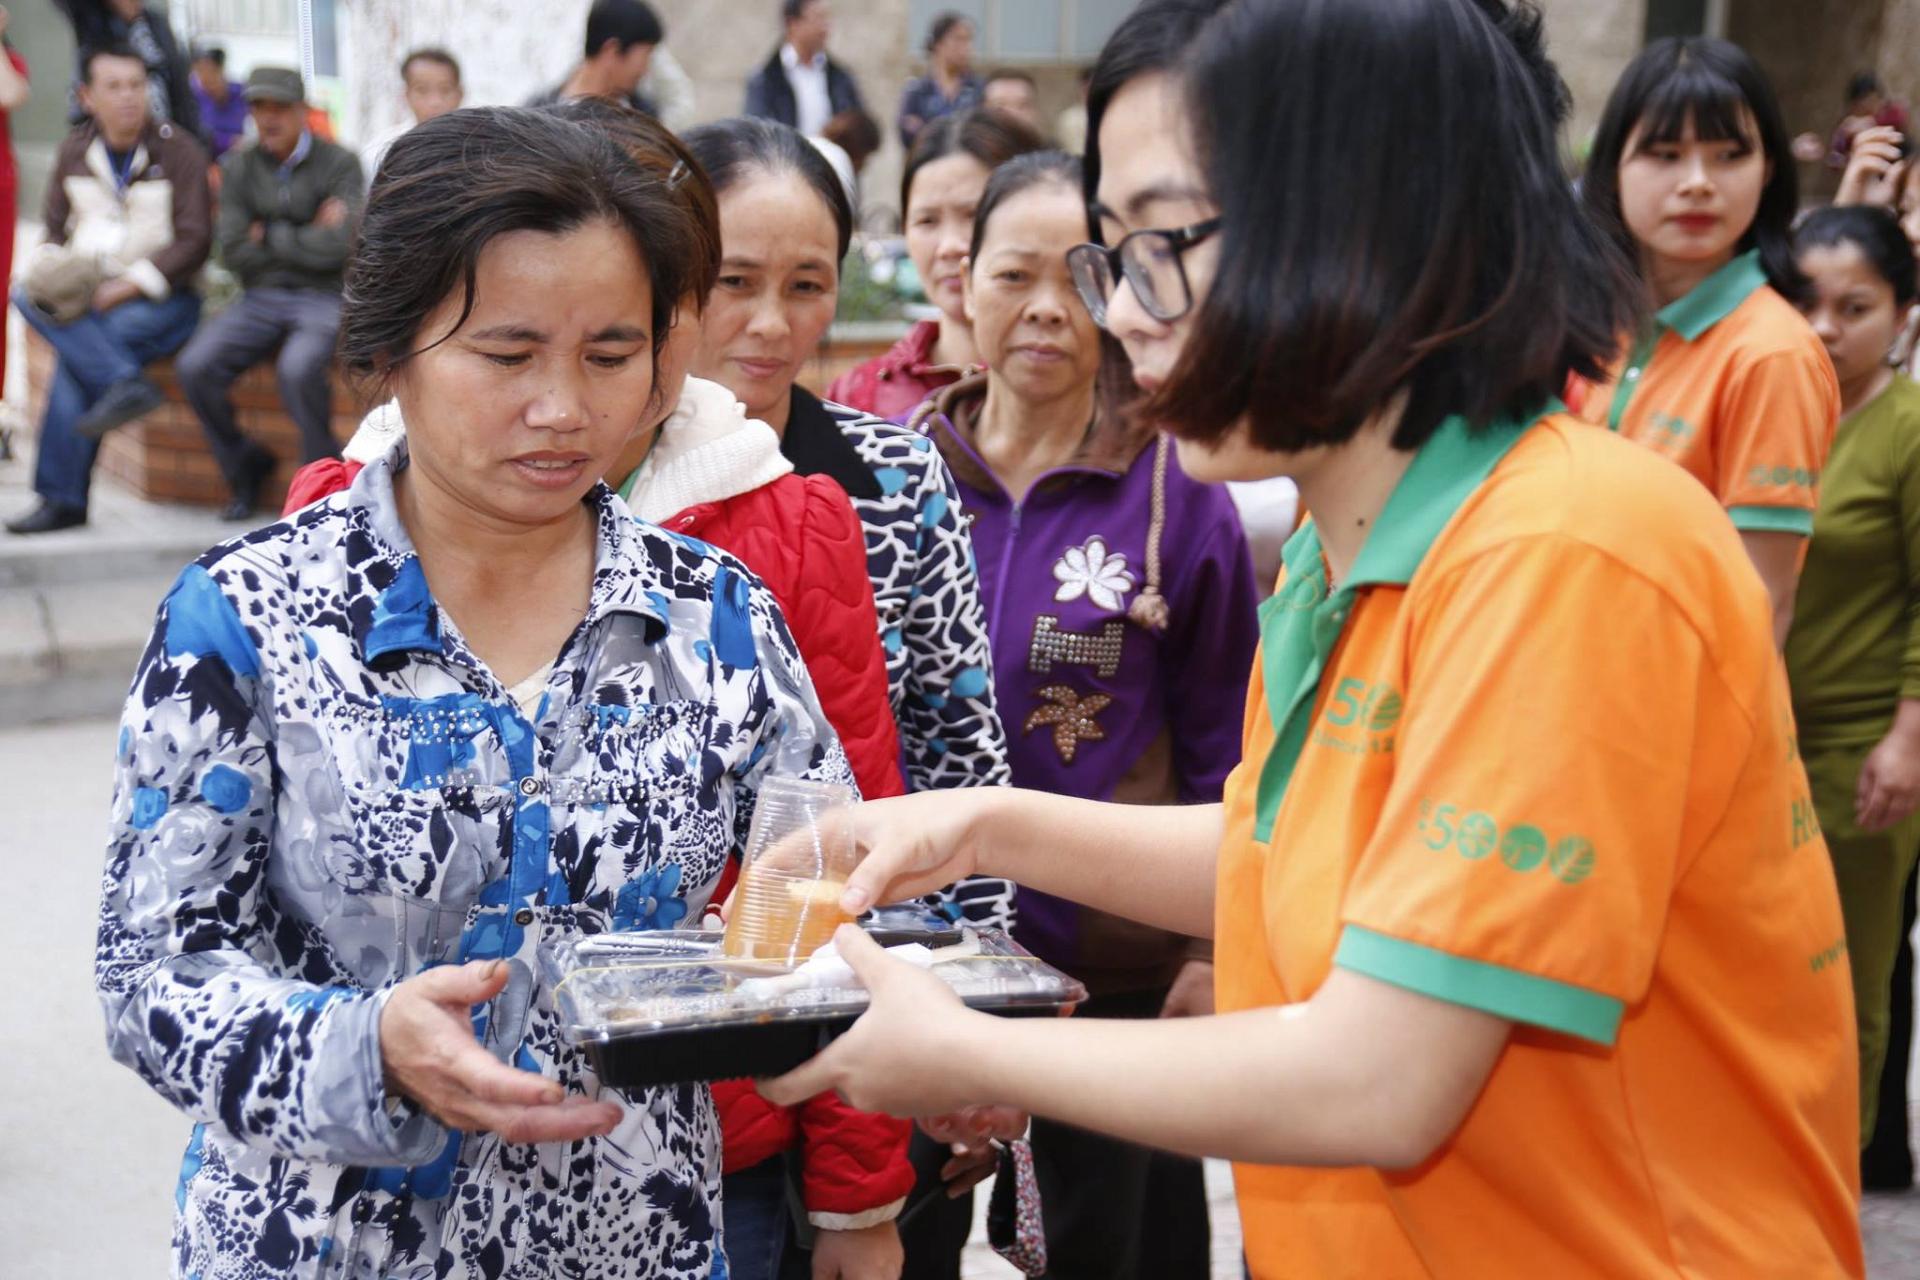 BV Việt Đức: Giám đốc Bệnh viện kêu gọi cộng đồng tìm thân nhân cho bệnh nhân tên 